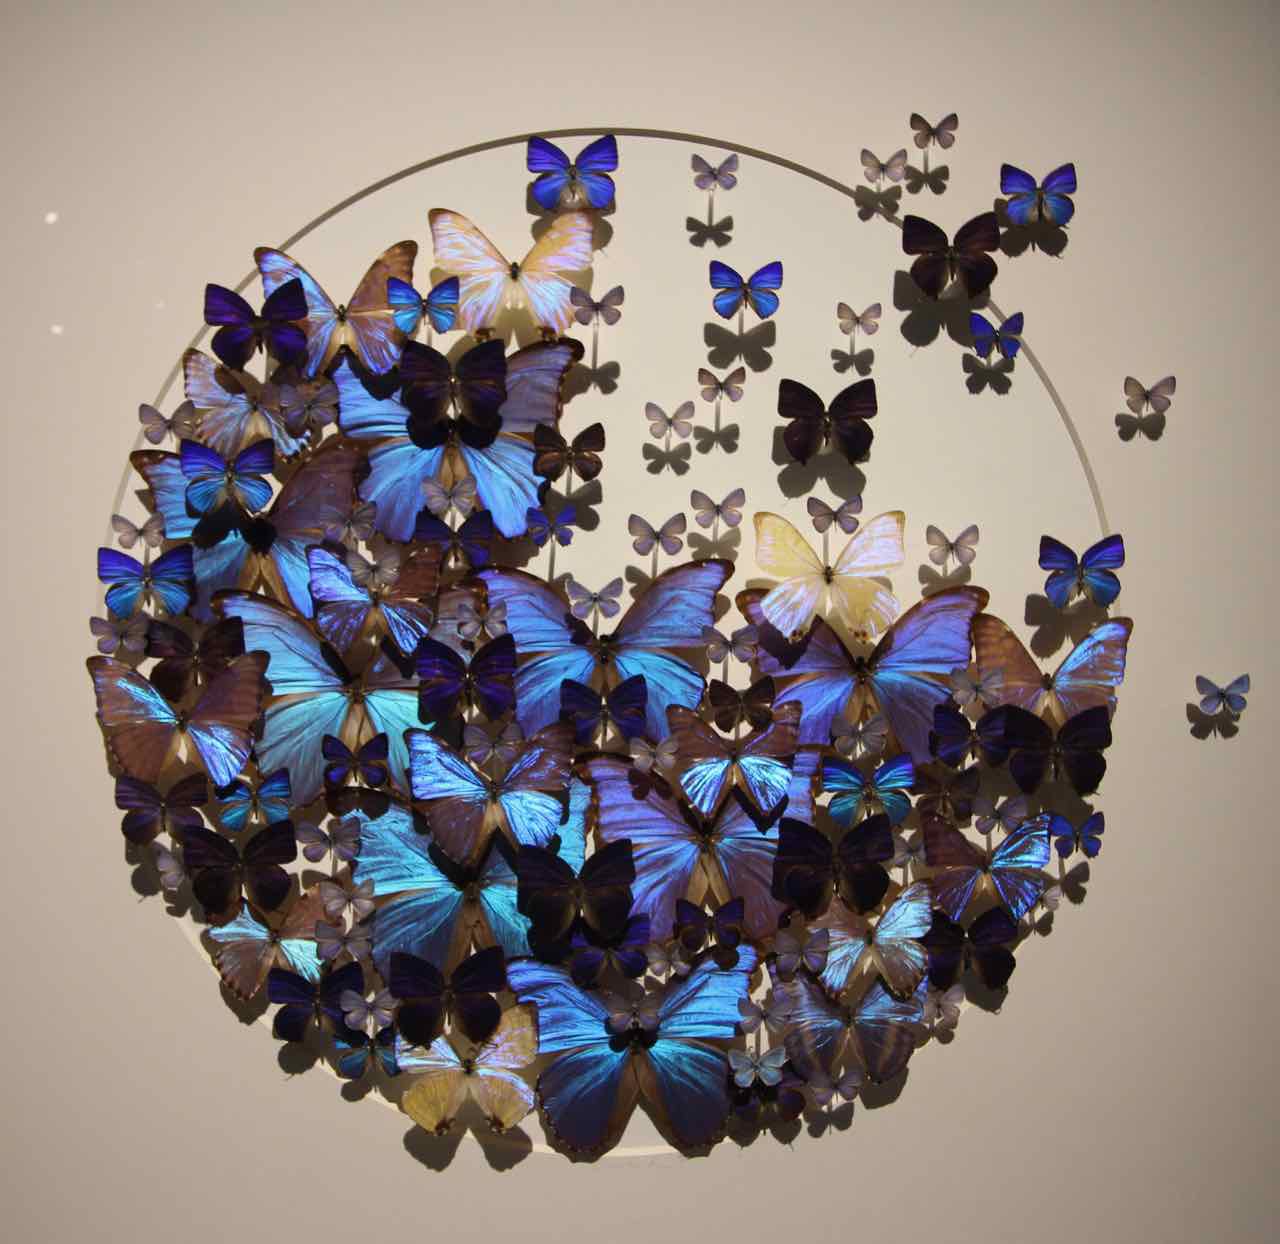 Blue butterflies circle